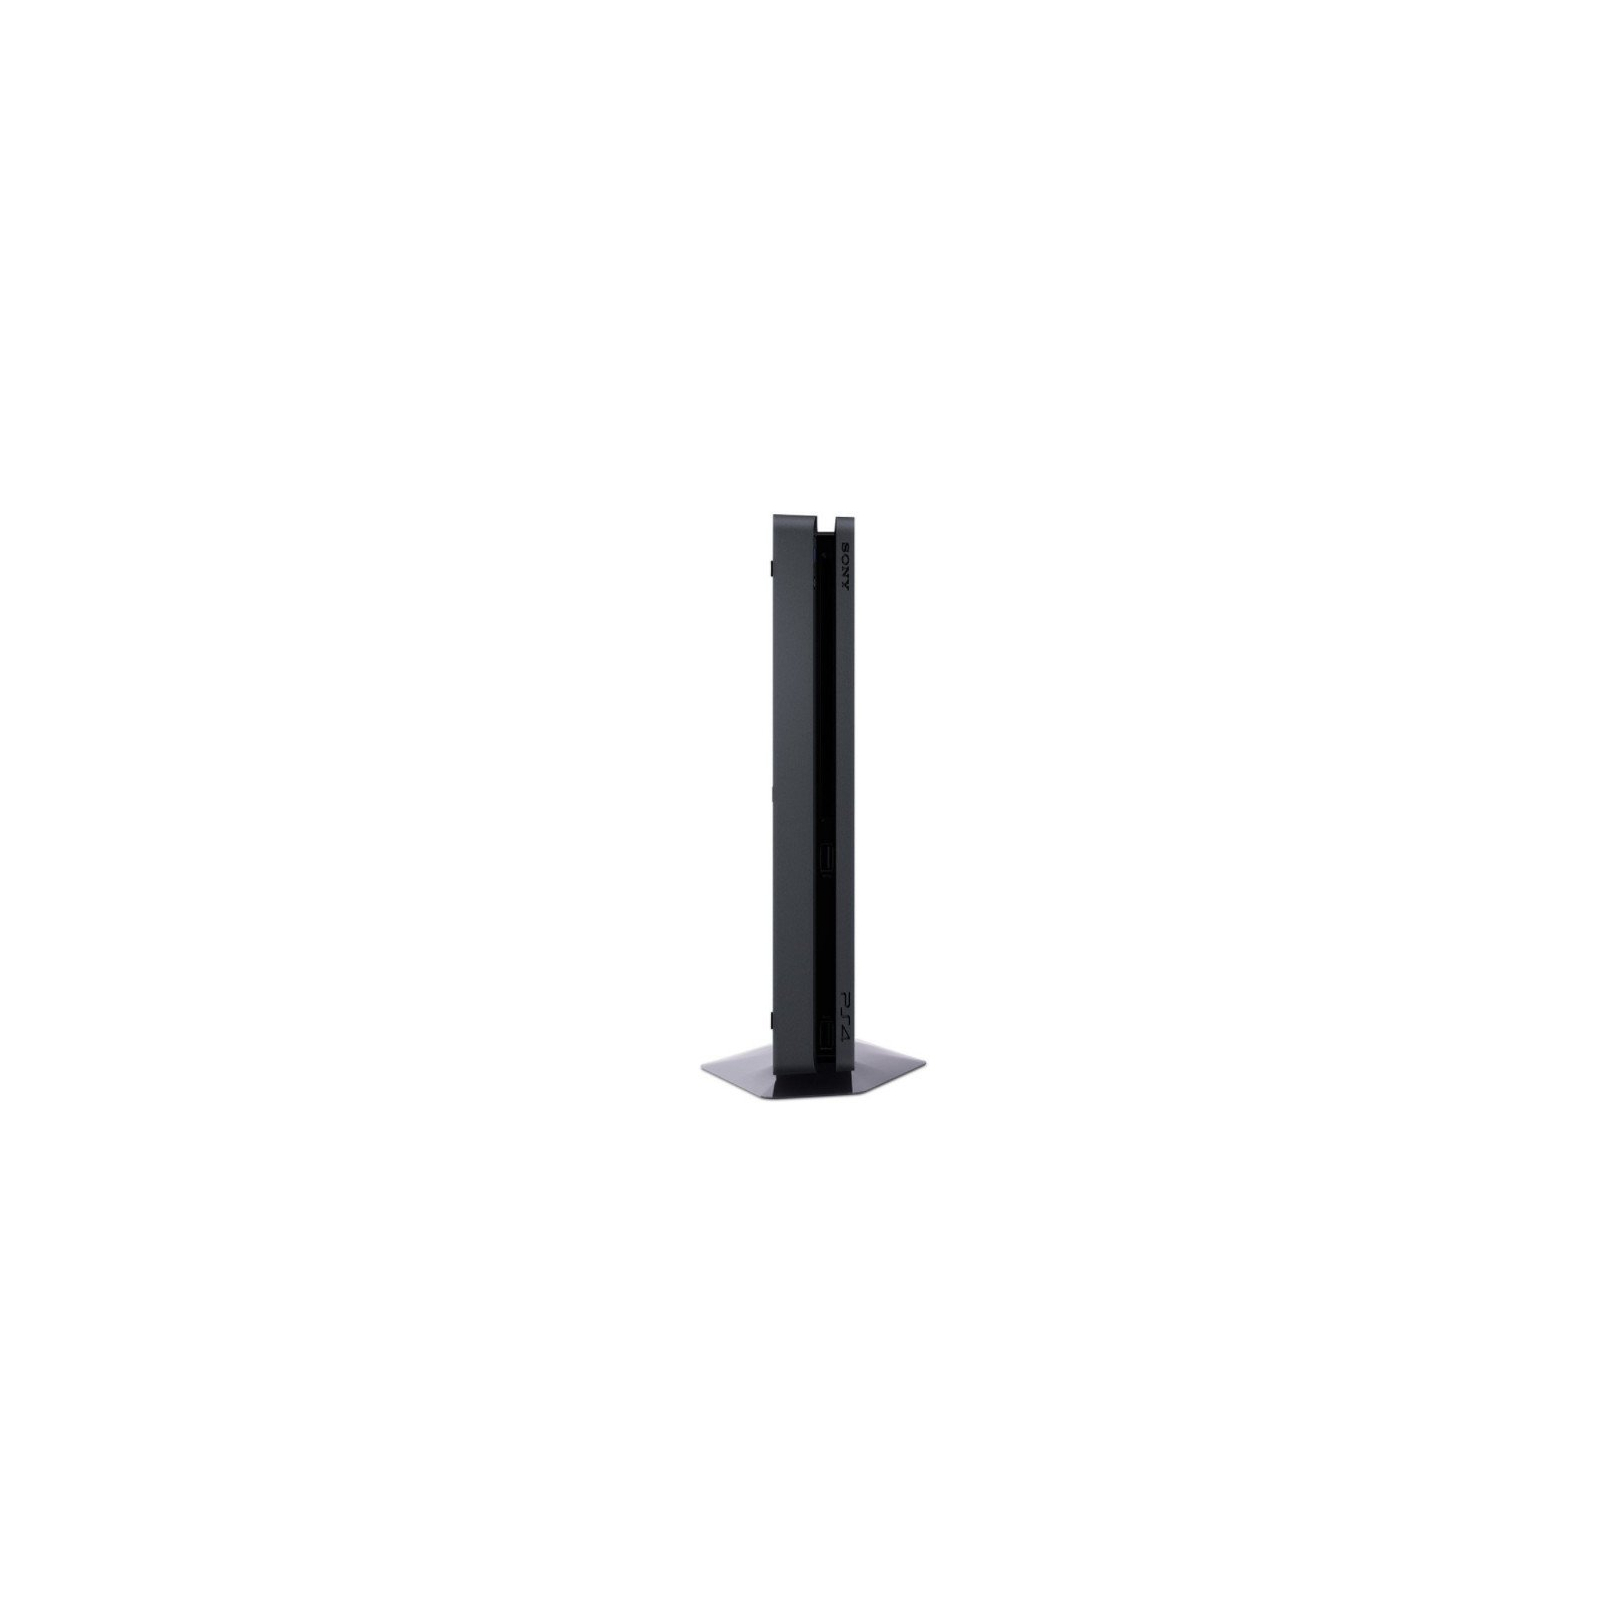 Игровая консоль Sony PlayStation 4 Slim 1Tb Black (Gran Turismo) (9907367) изображение 8